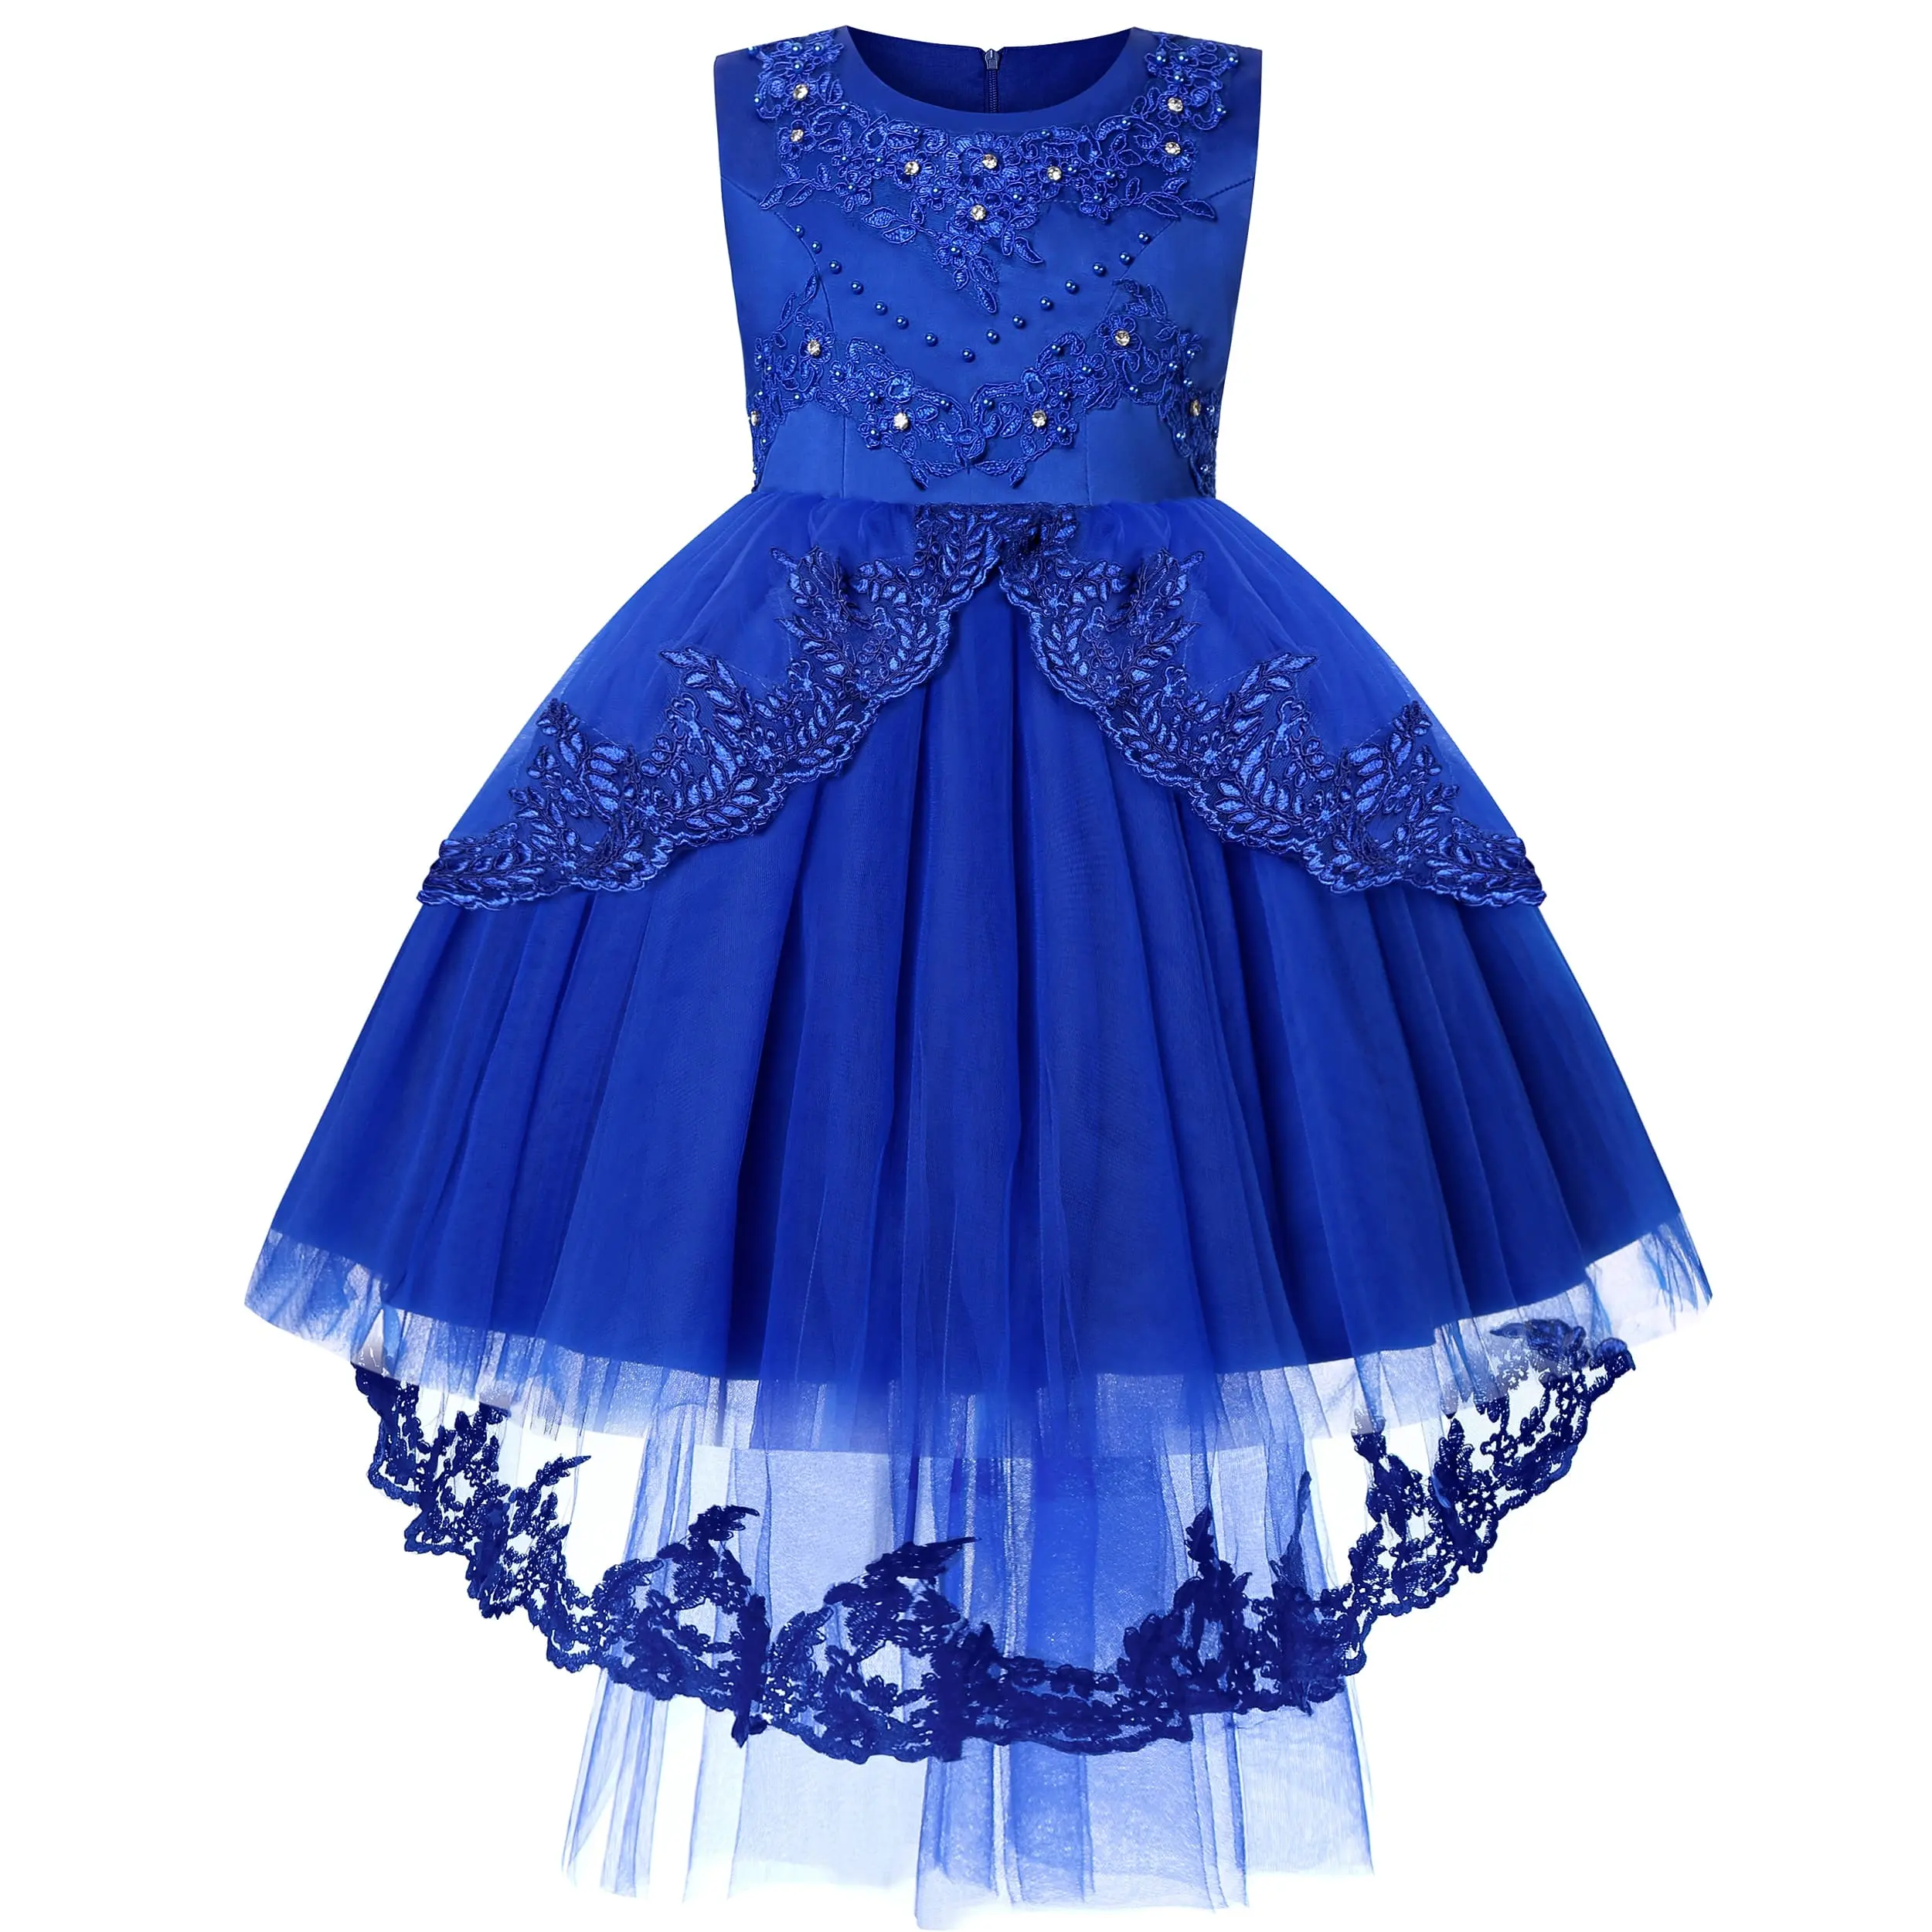 Çocuk giyim fantezi parti elbise Frocks tasarımlar tül çiçek elbiseler kızlar için